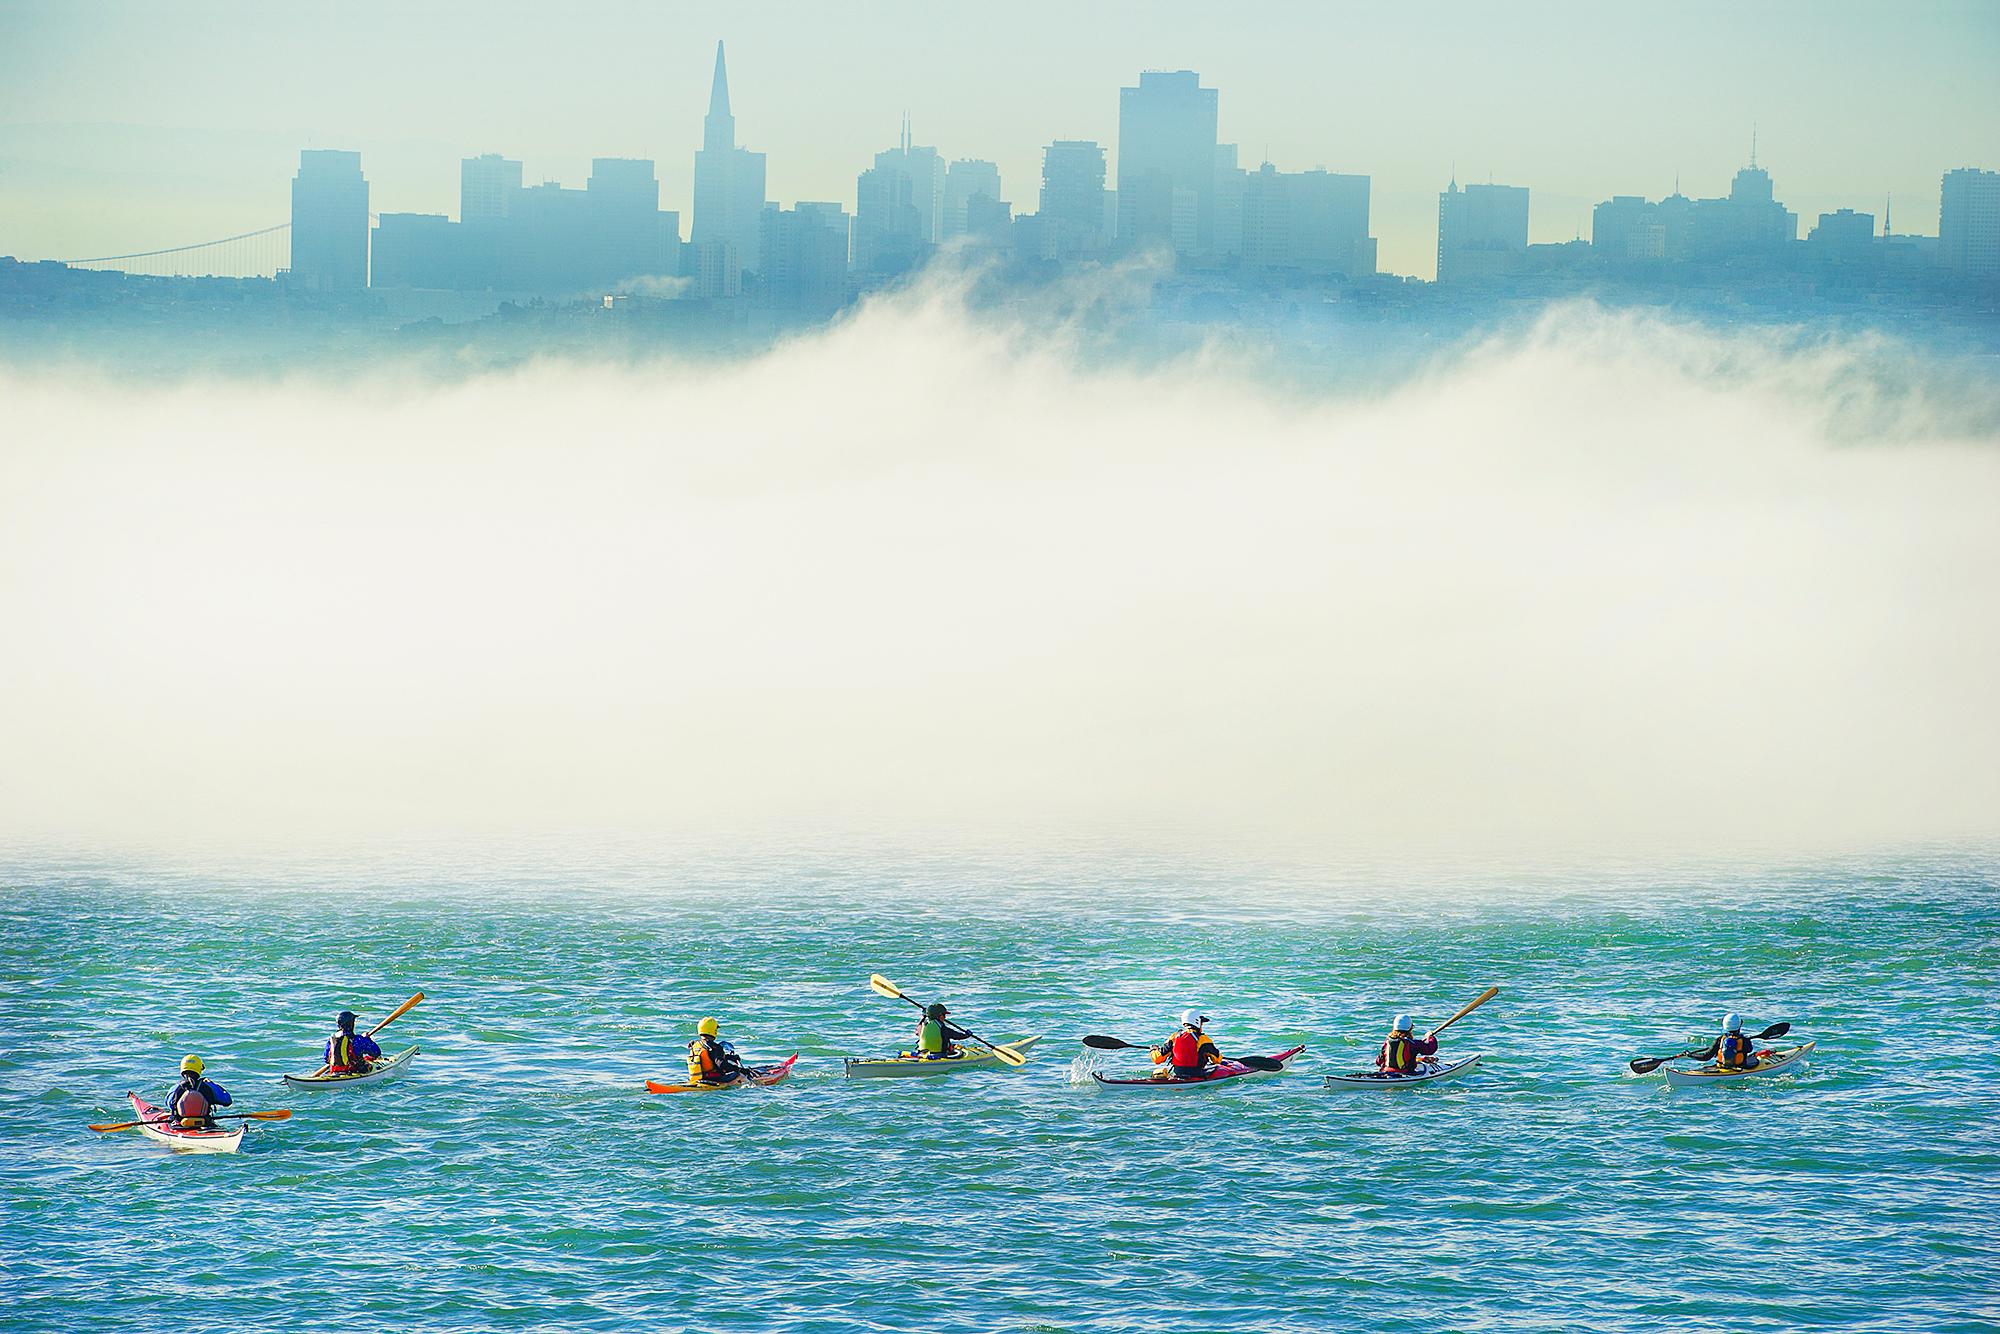 Landscape Photograph Mitchell Funk - Fête surréaliste en kayak dans la baie de San Francisco, brumeuse et métaphysique, à l'horizon assombri